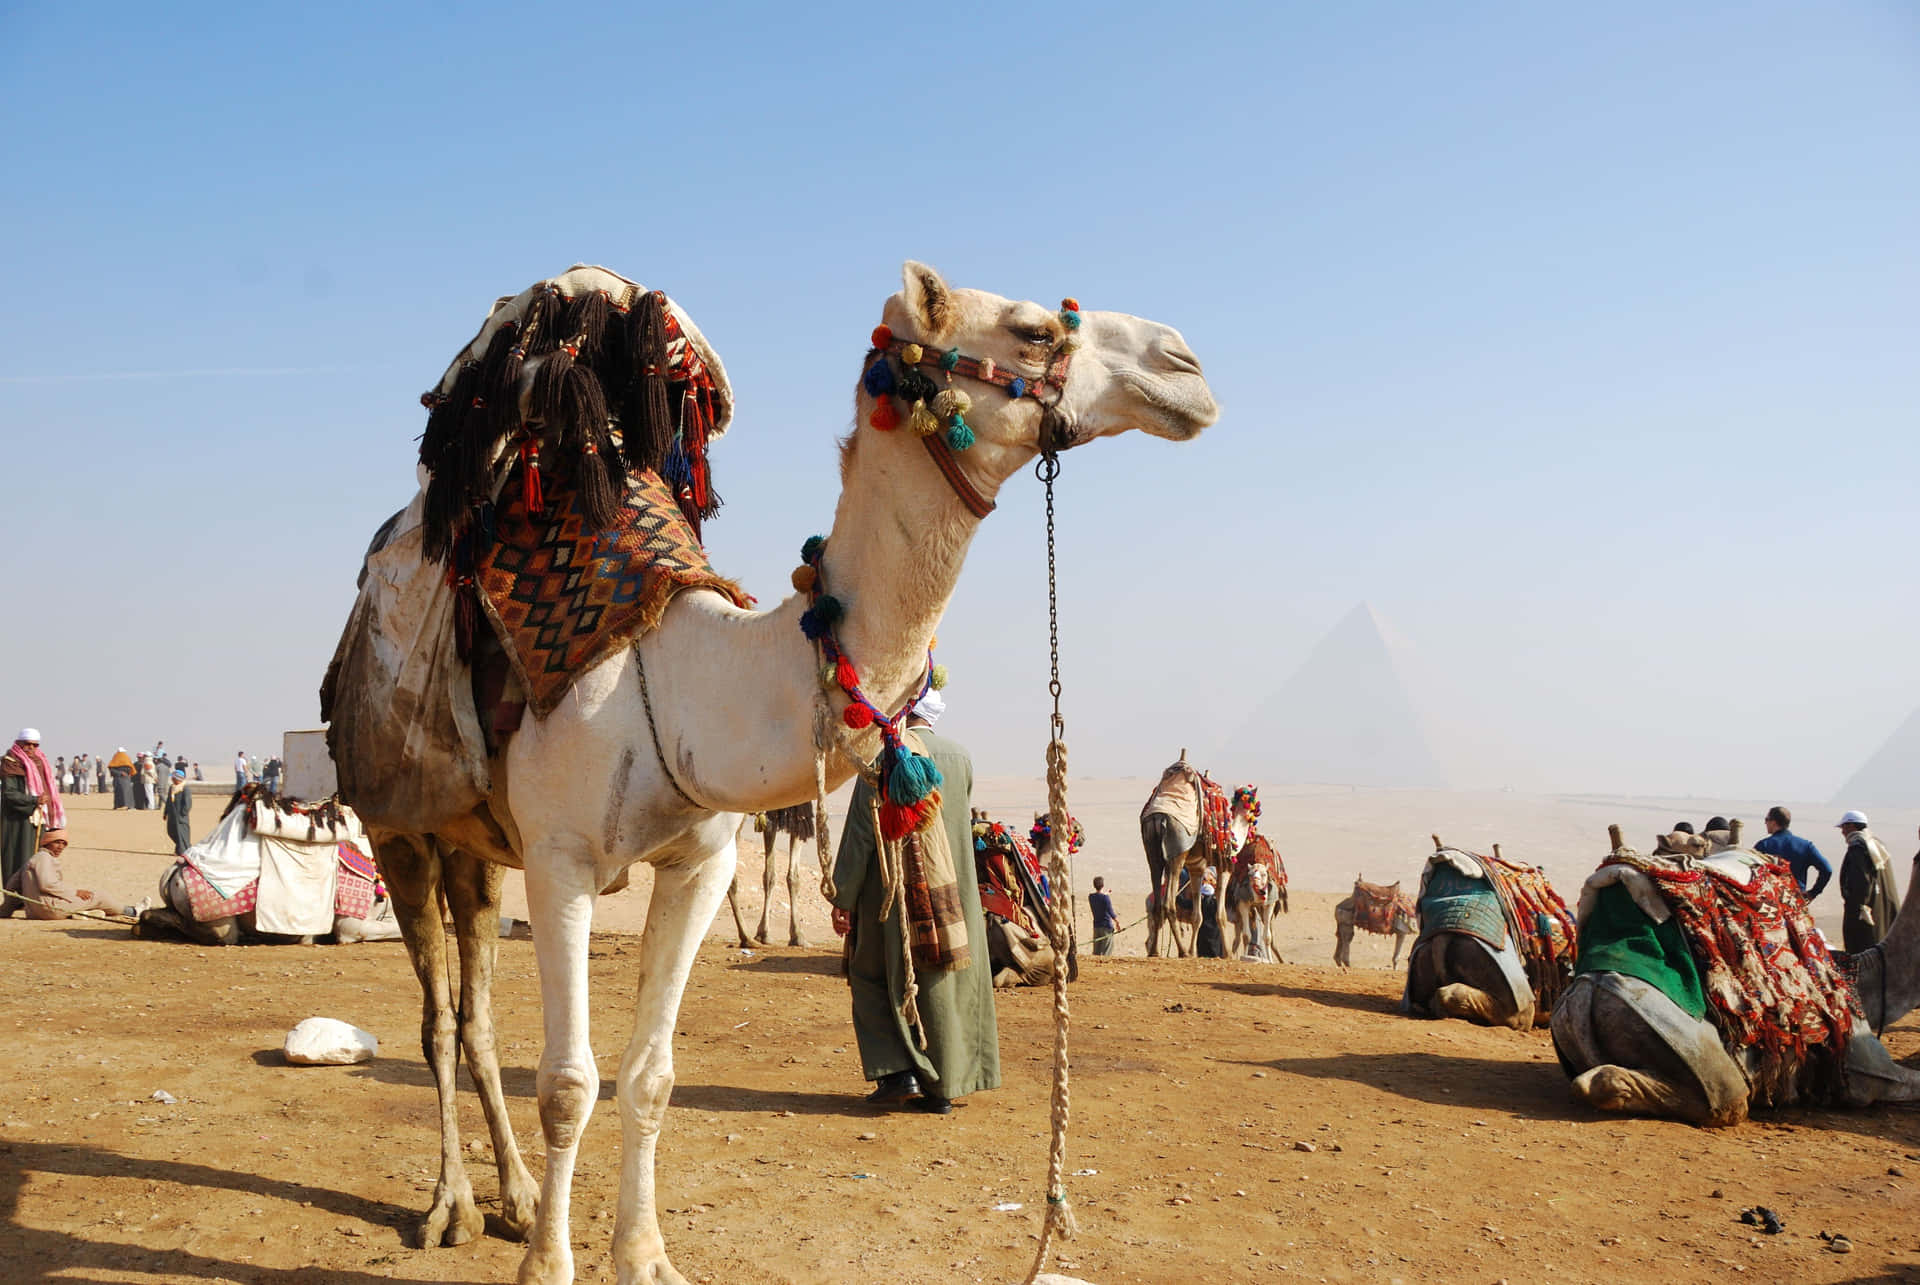 Einbraunes Kuscheliges Kamel Steht In Einer Wüstenlandschaft Neben Den Schrägen Felsen, Mit Einer Tiefstehenden Sonne Im Hintergrund.